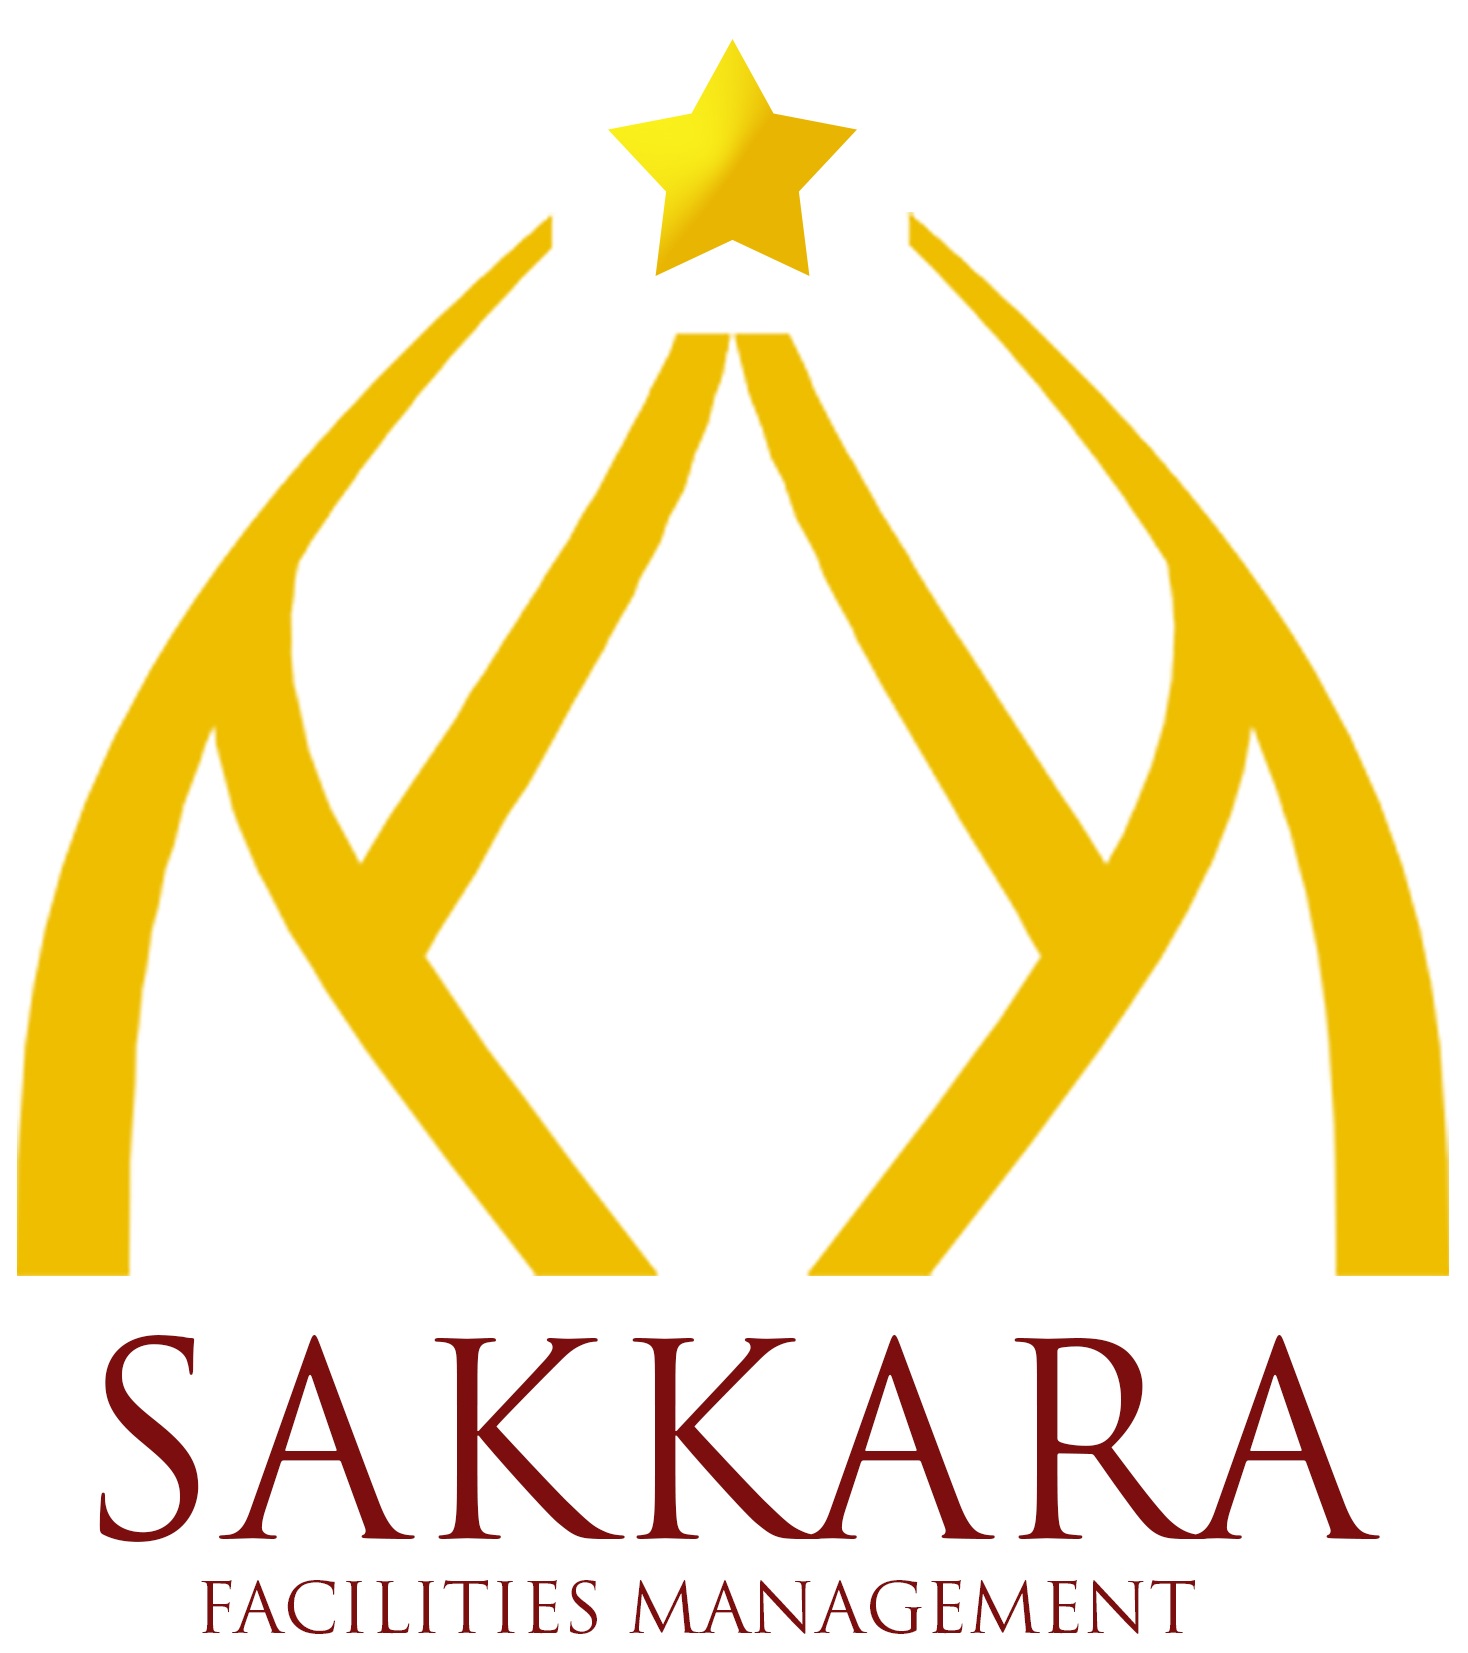 Sakkara Facilities Management